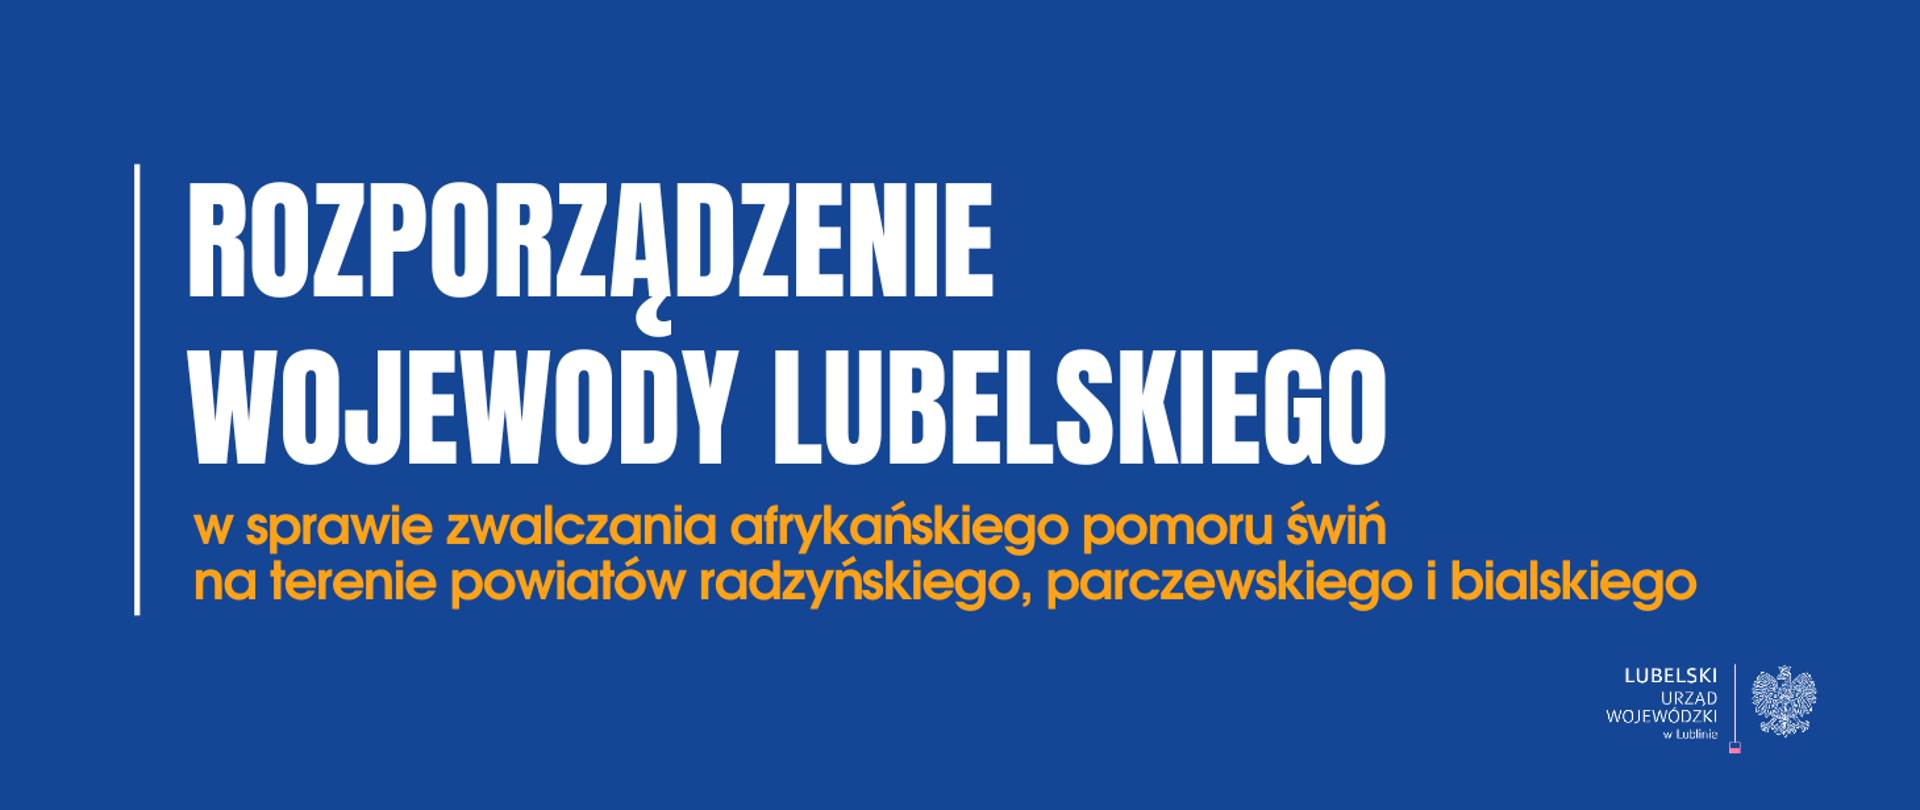 Granatowy prostokąt z napisem: Rozporządzenie wojewody lubelskiego w sprawie zwalczania afrykańskiego pomoru świń na terenie powiatów radzyńskiego, parczewskiego i bialskiego.